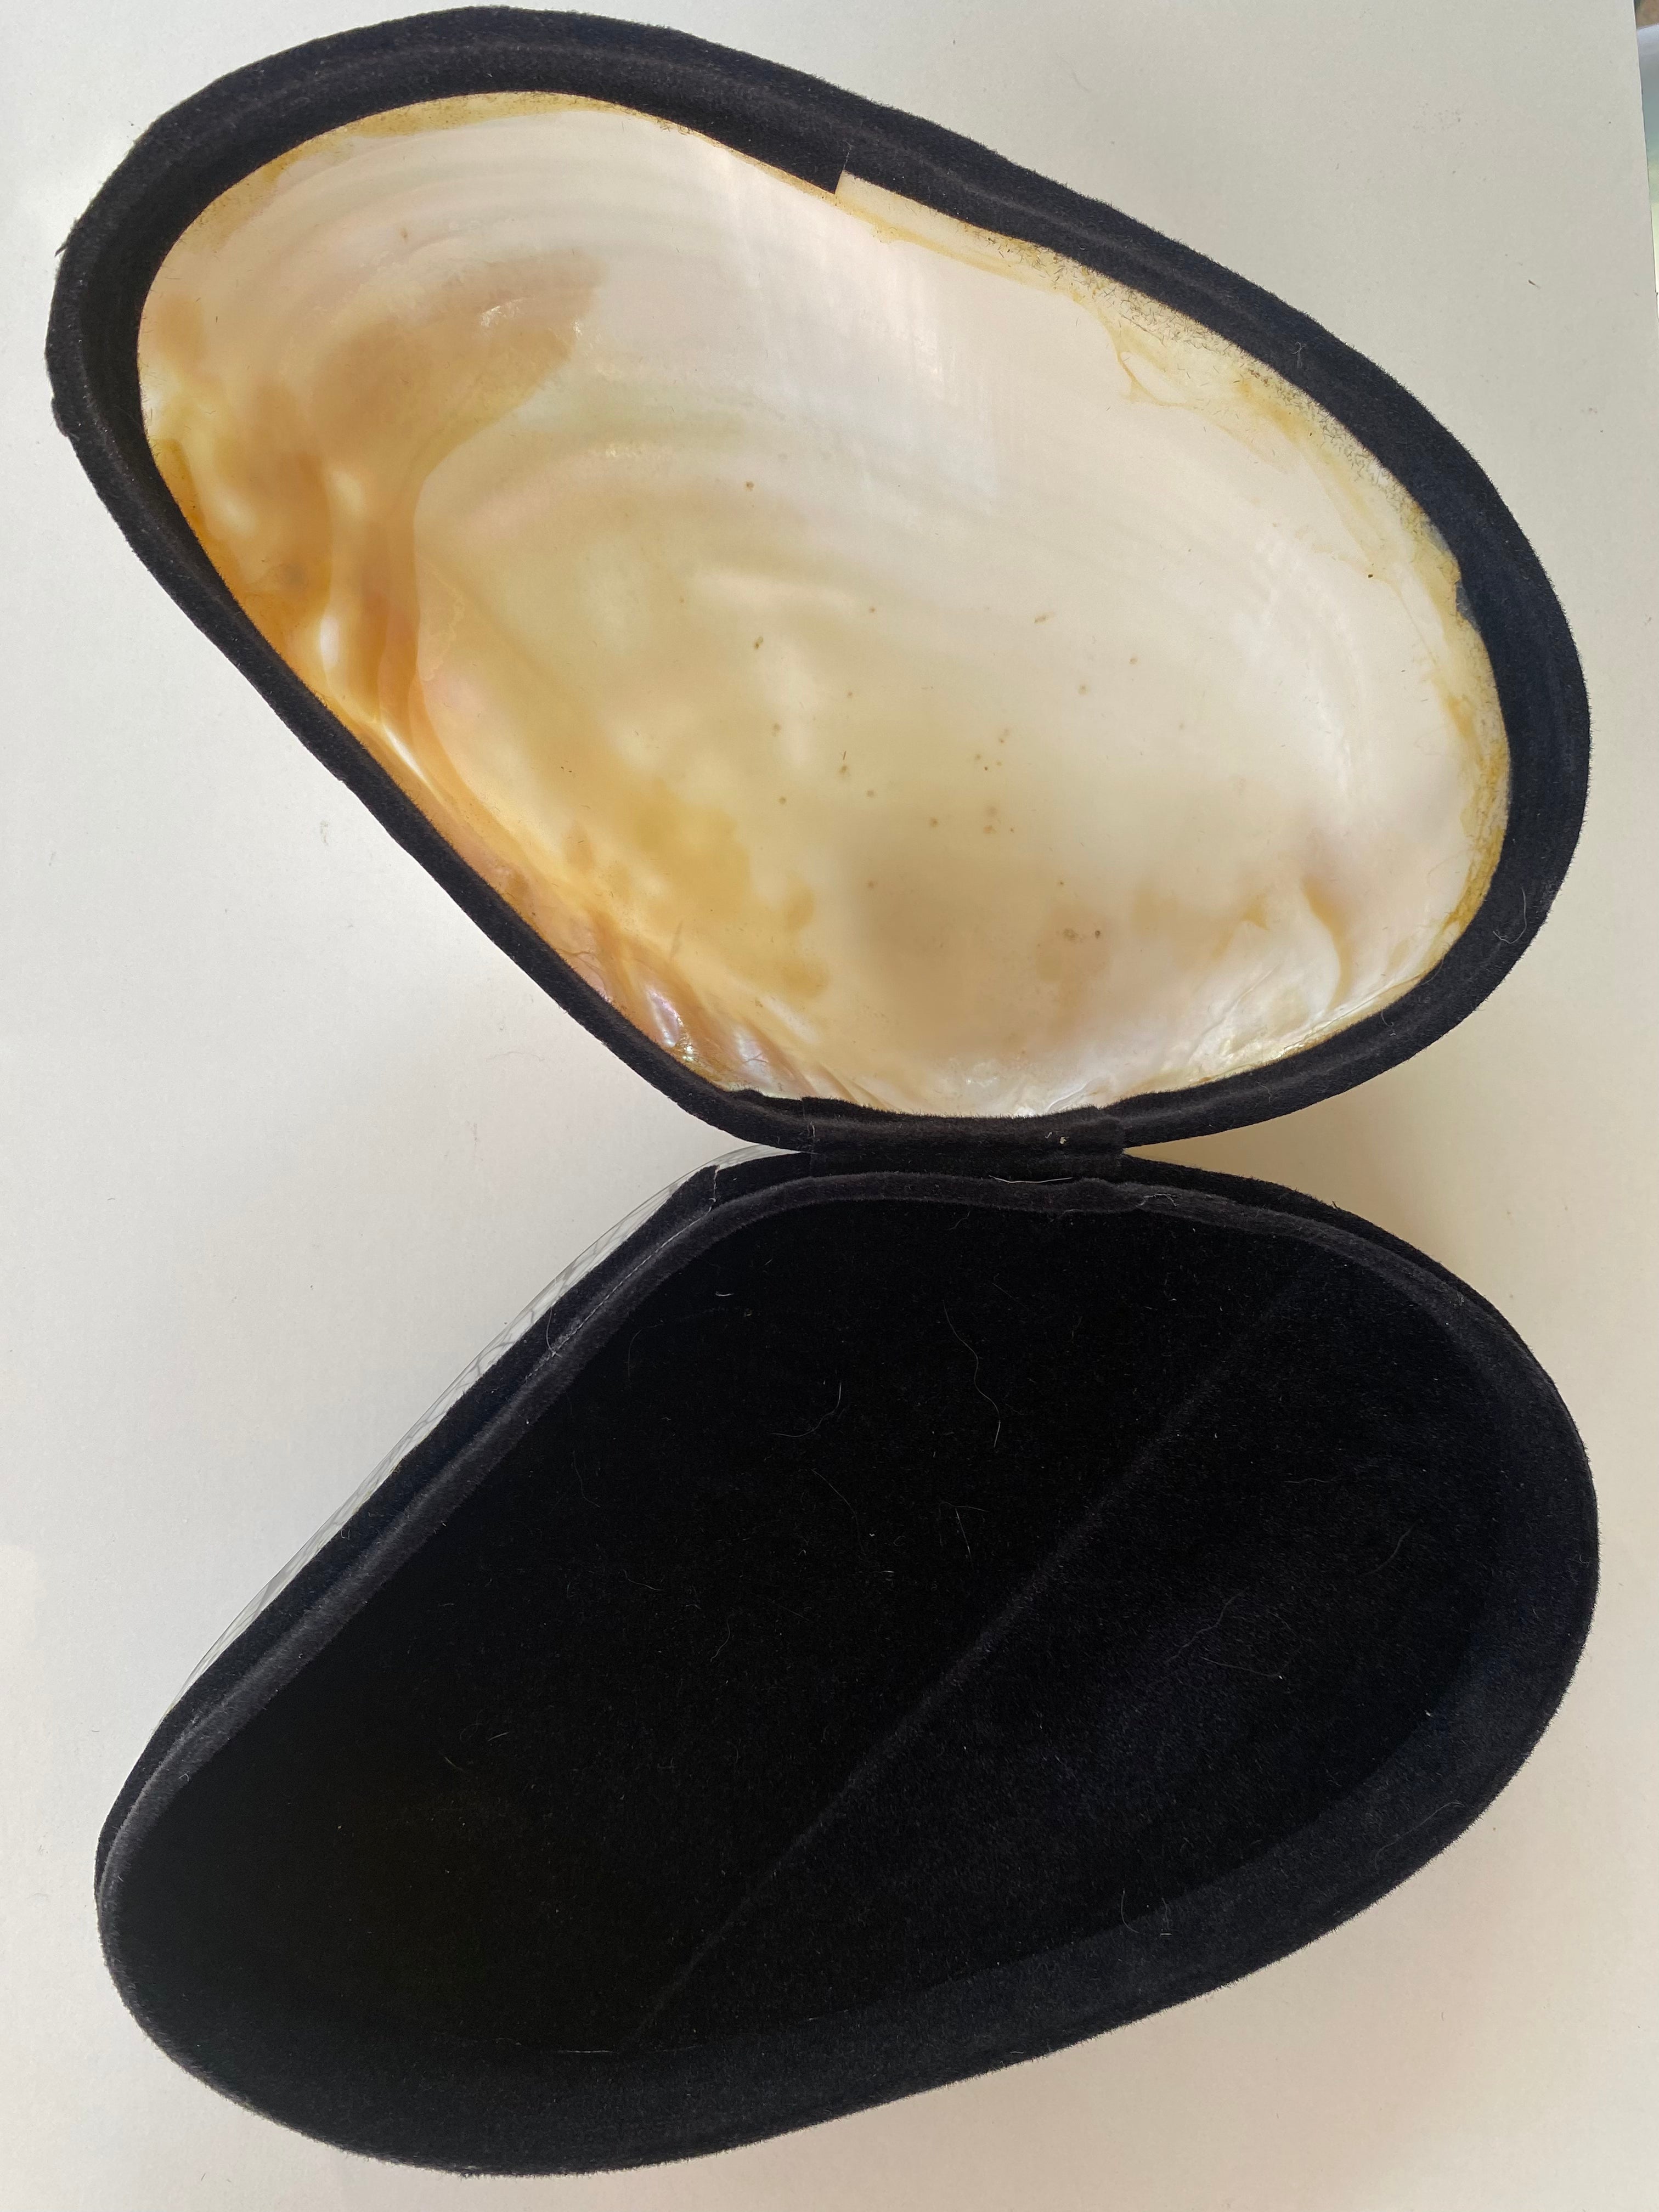 Abalone Shell Jewelry box / decor